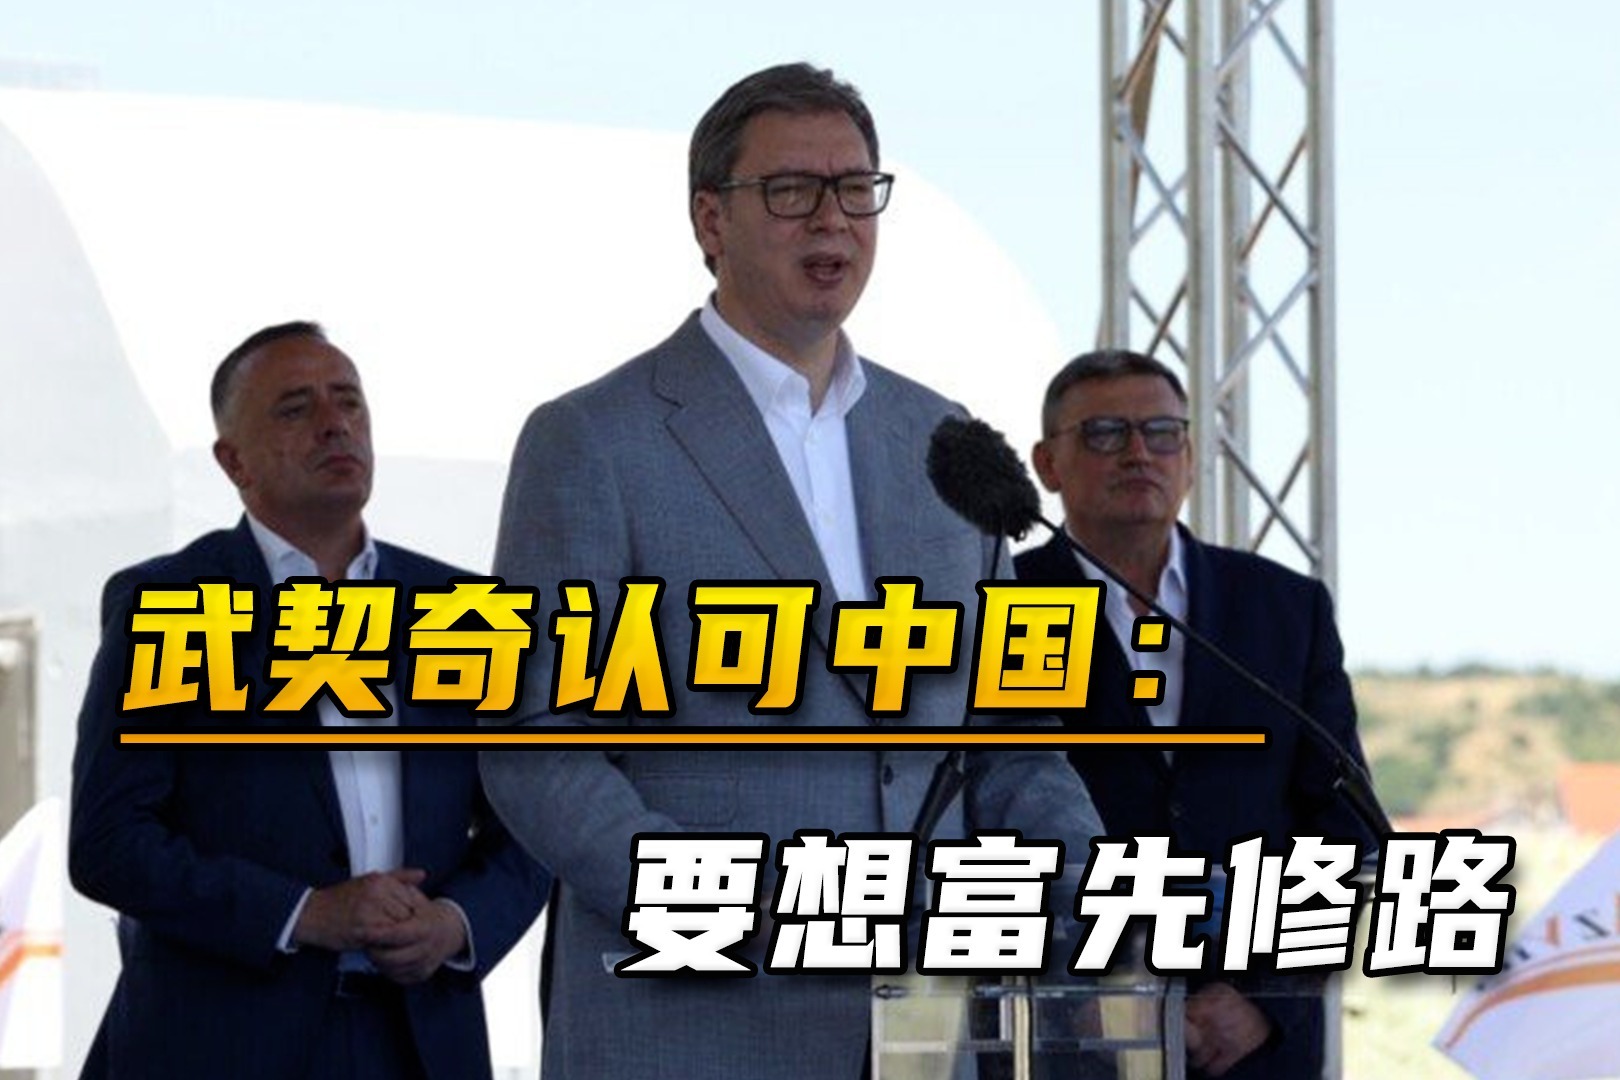 习近平会见塞尔维亚总统武契奇|界面新闻 · 中国